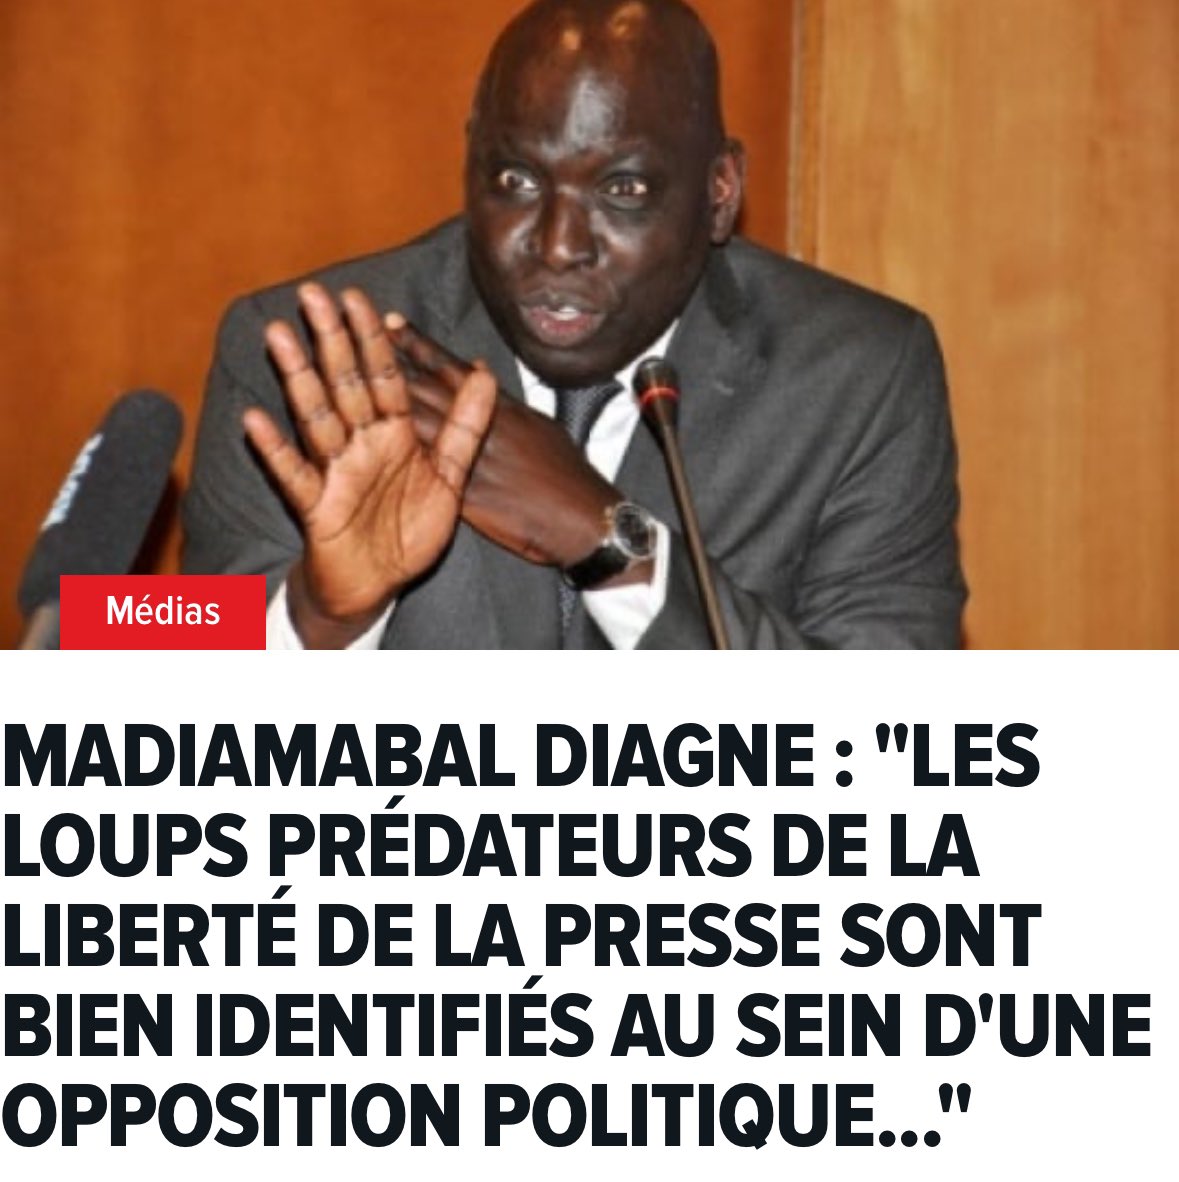 #LibertéPresse #ReportersSansFrontieres
#ClassementSenegal 

Classement mondial de la liberté de la presse: grand recul du Sénégal de la 73ème à la 104è place. Il manque toujours une belle occasion de se taire.